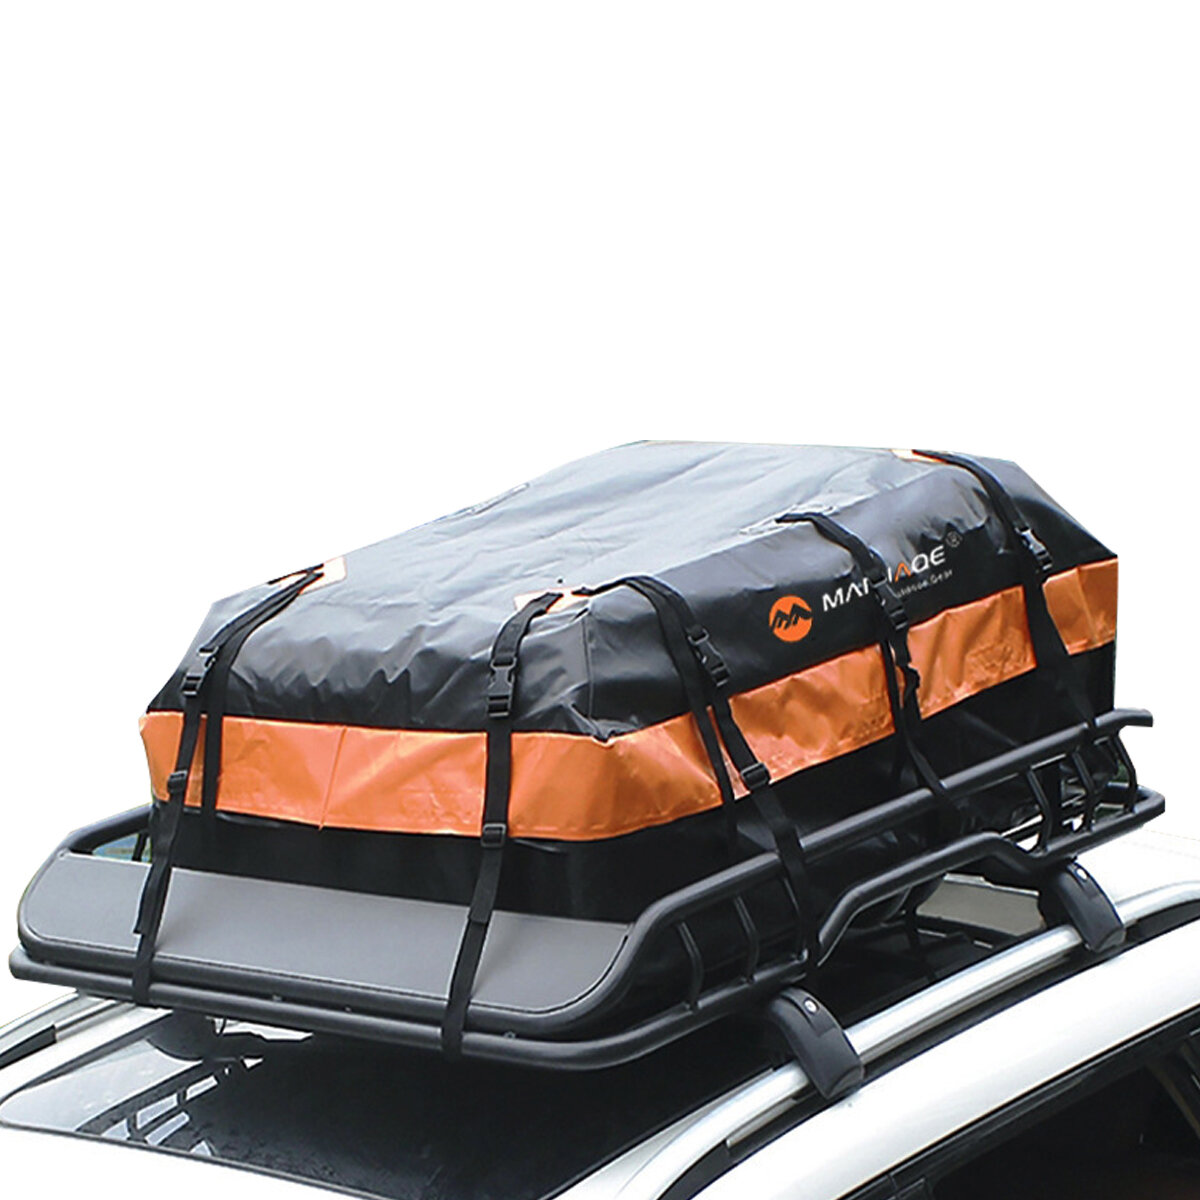 Автомобильная крышка MARJAQE 450L для багажа на крыше автомобиля, водонепроницаемая сумка-носитель с 10 усиленными ремнями, подходит для всех типов транспортных средств.